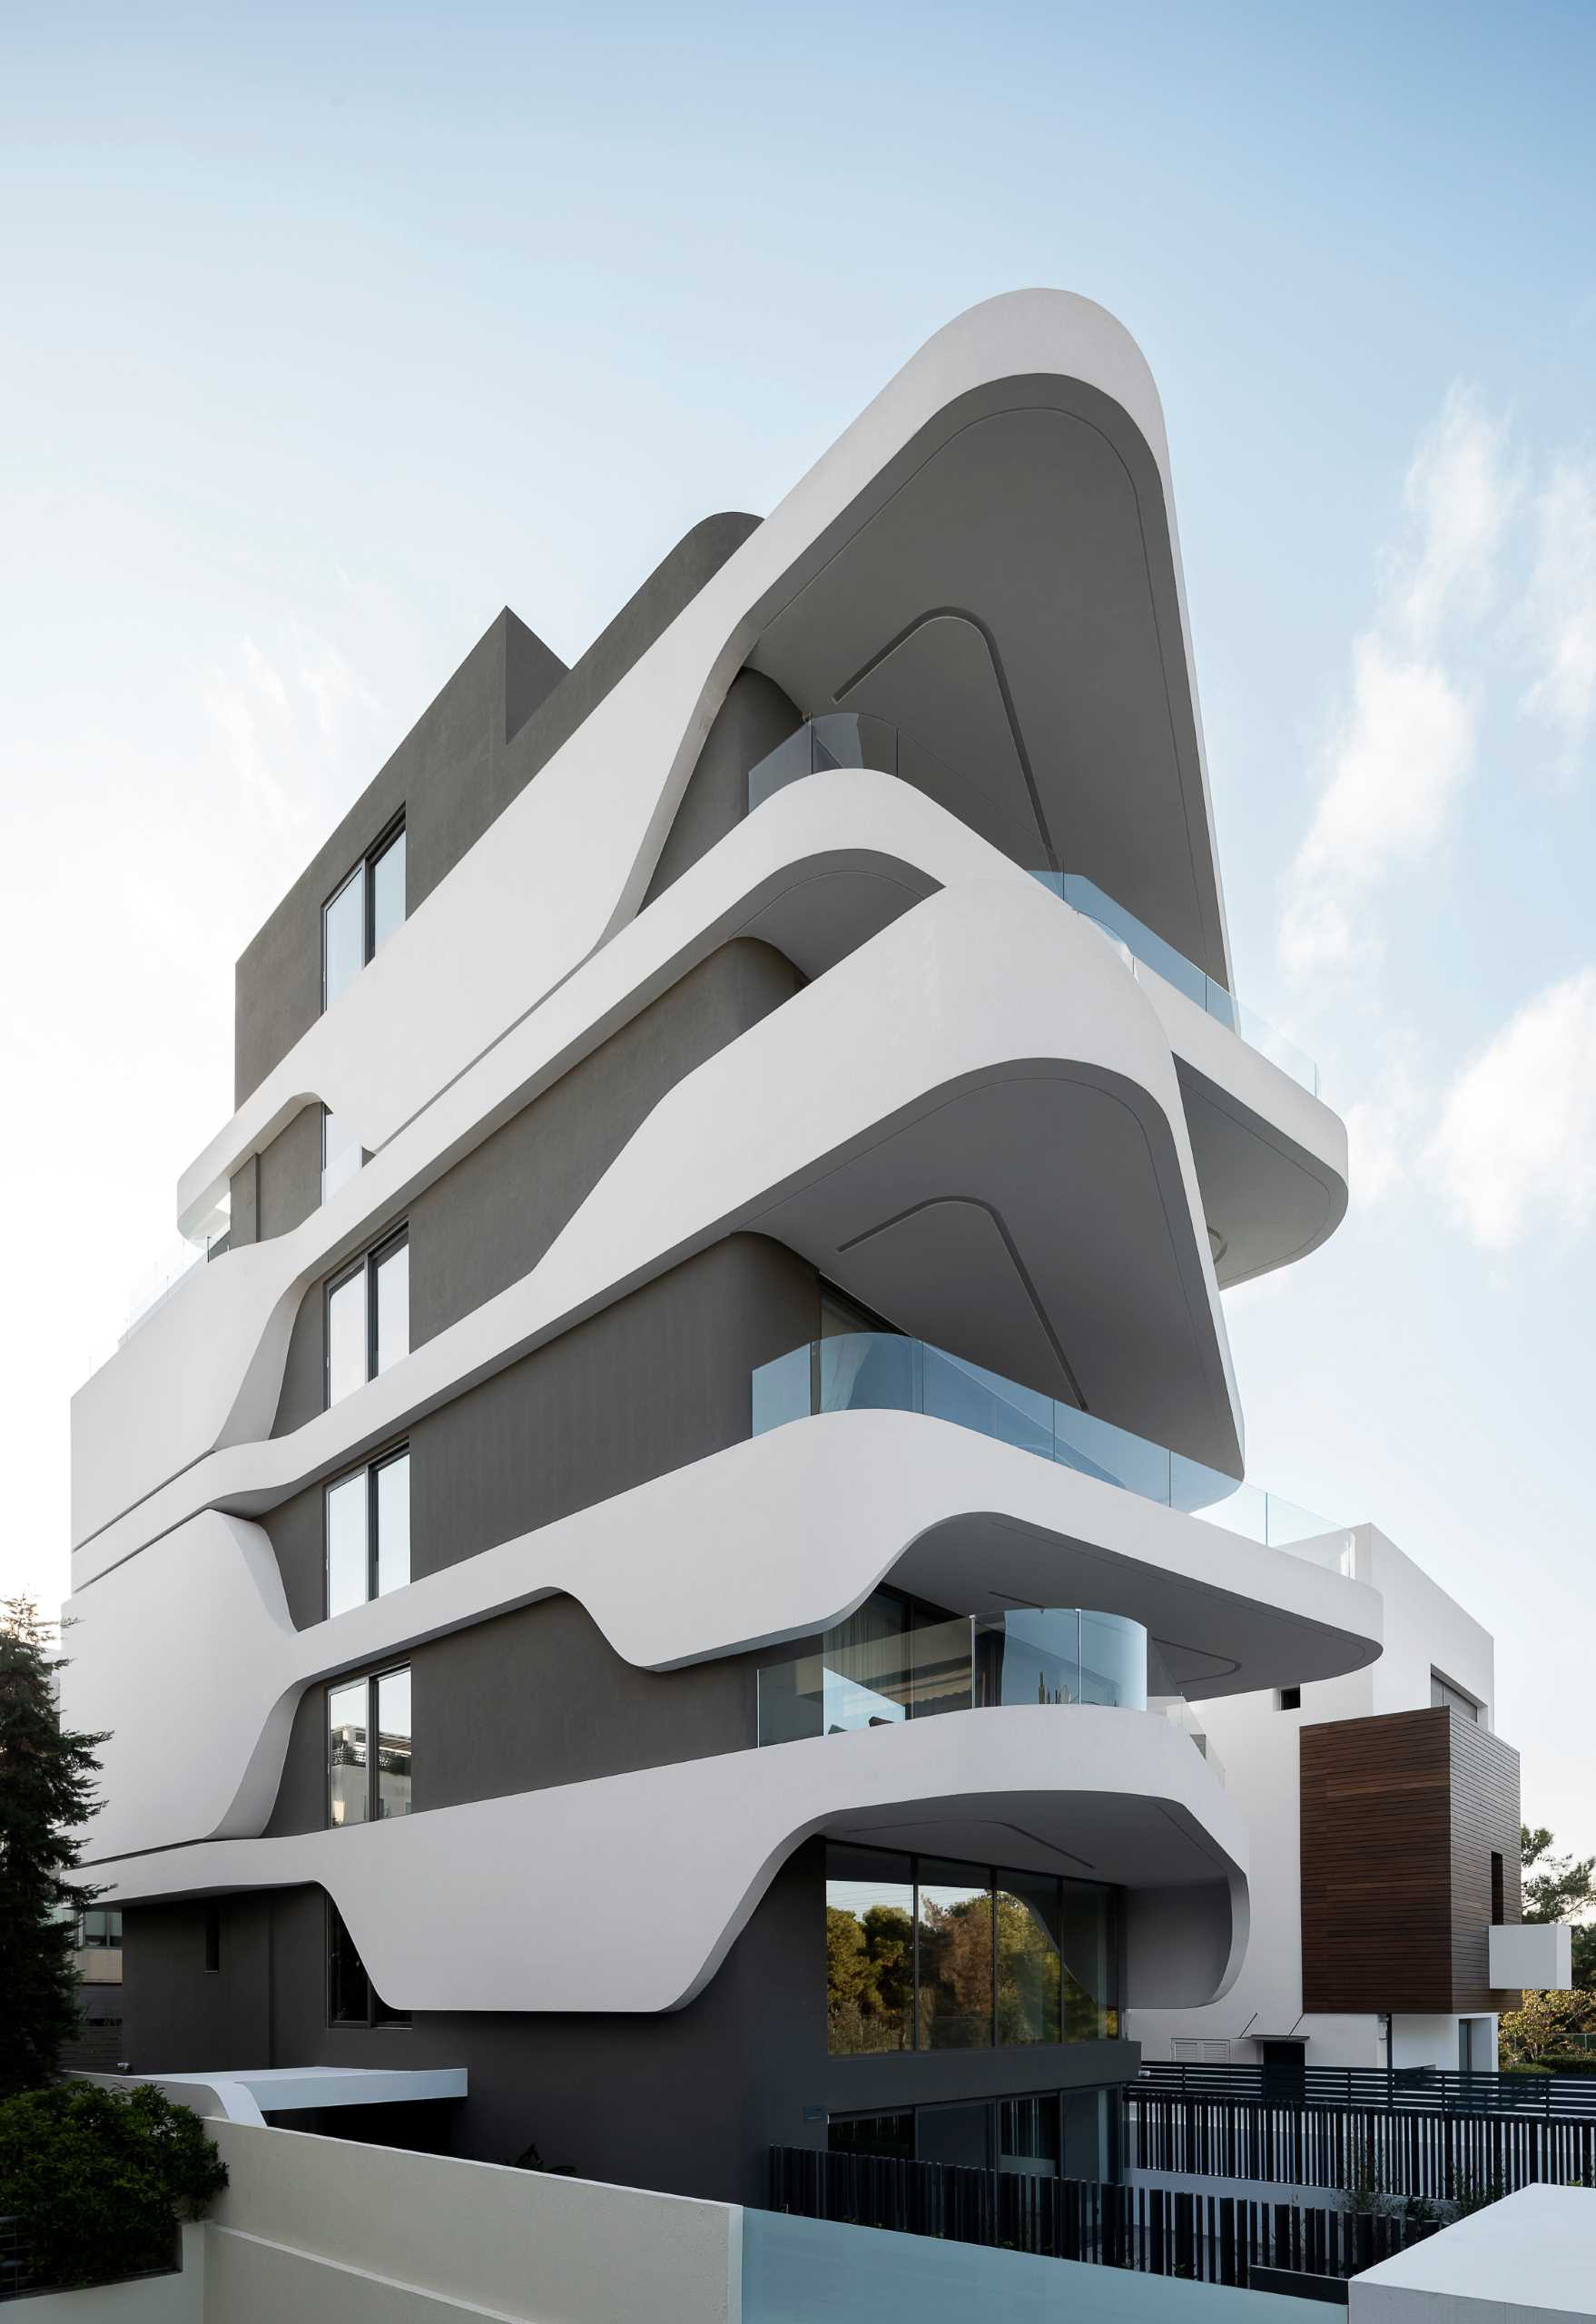 کلید طراحی این ساختمان آپارتم، مدرن، بالکن های منحنی شکل است که جهت های متناوب را تغییر می دهند و نمایی پر جنب و جوش ایجاد می کنند.